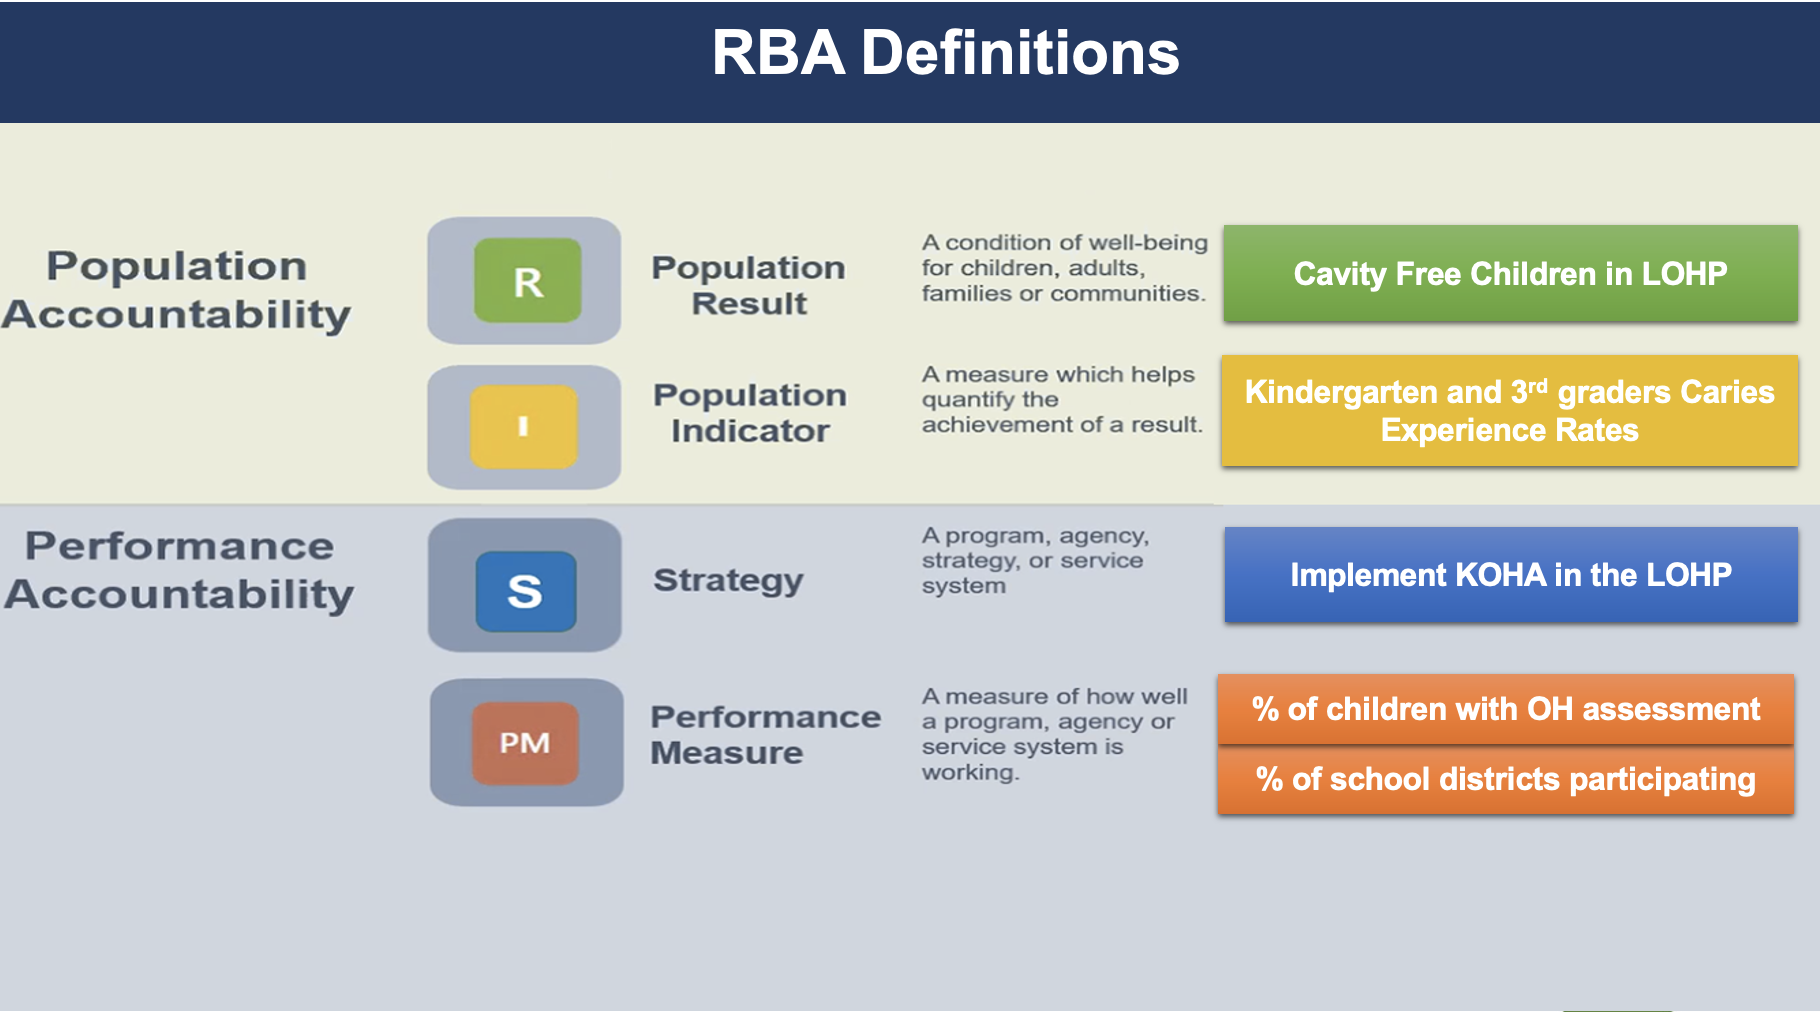 RBA measures